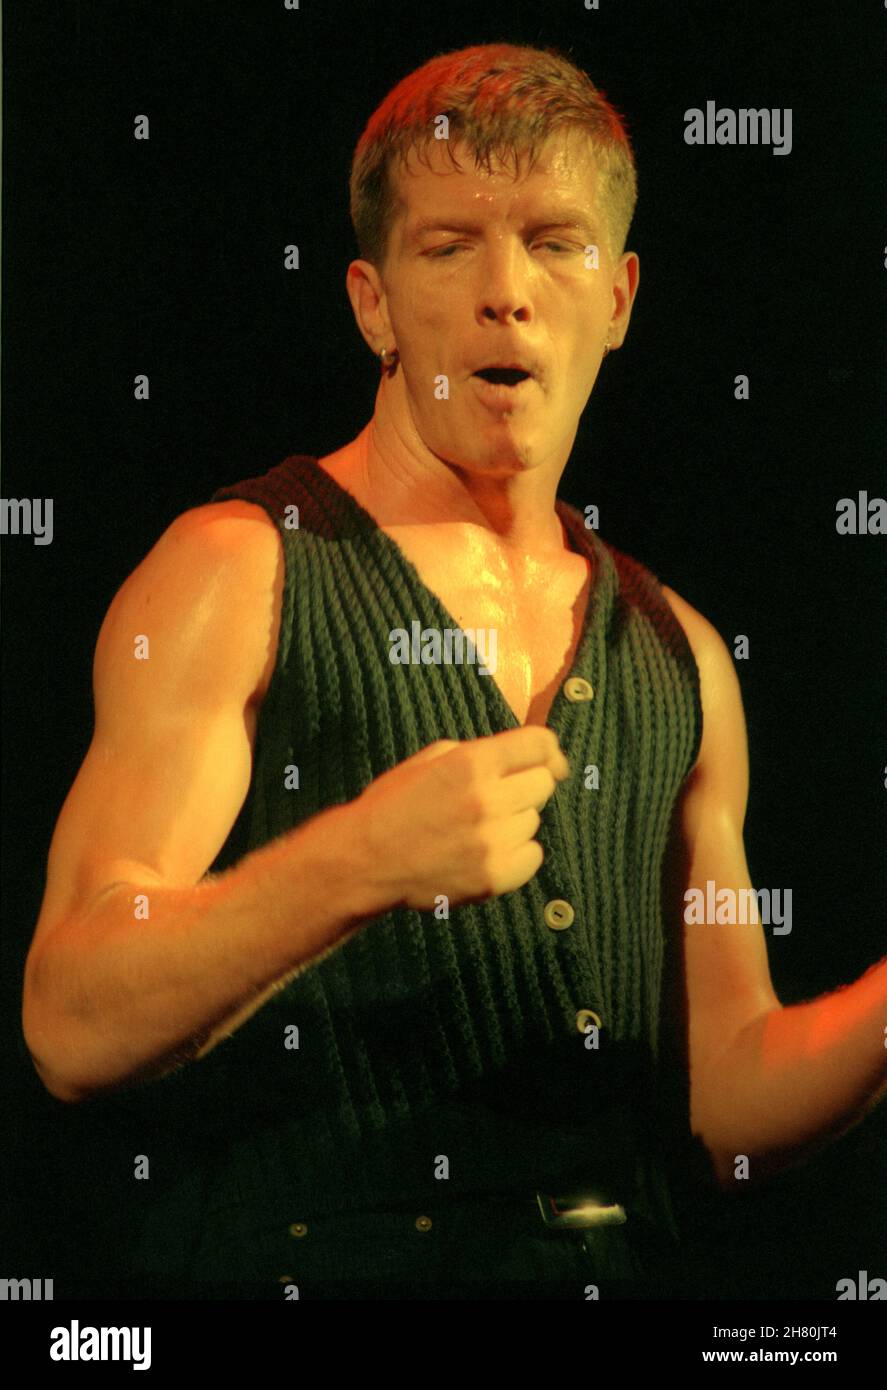 The Stranglers Concert, Wembley Arena, Londra, 26/3/1994 - Paul Roberts, cantante dal 1990 al 2006, cantando dal vivo sul palco Foto Stock